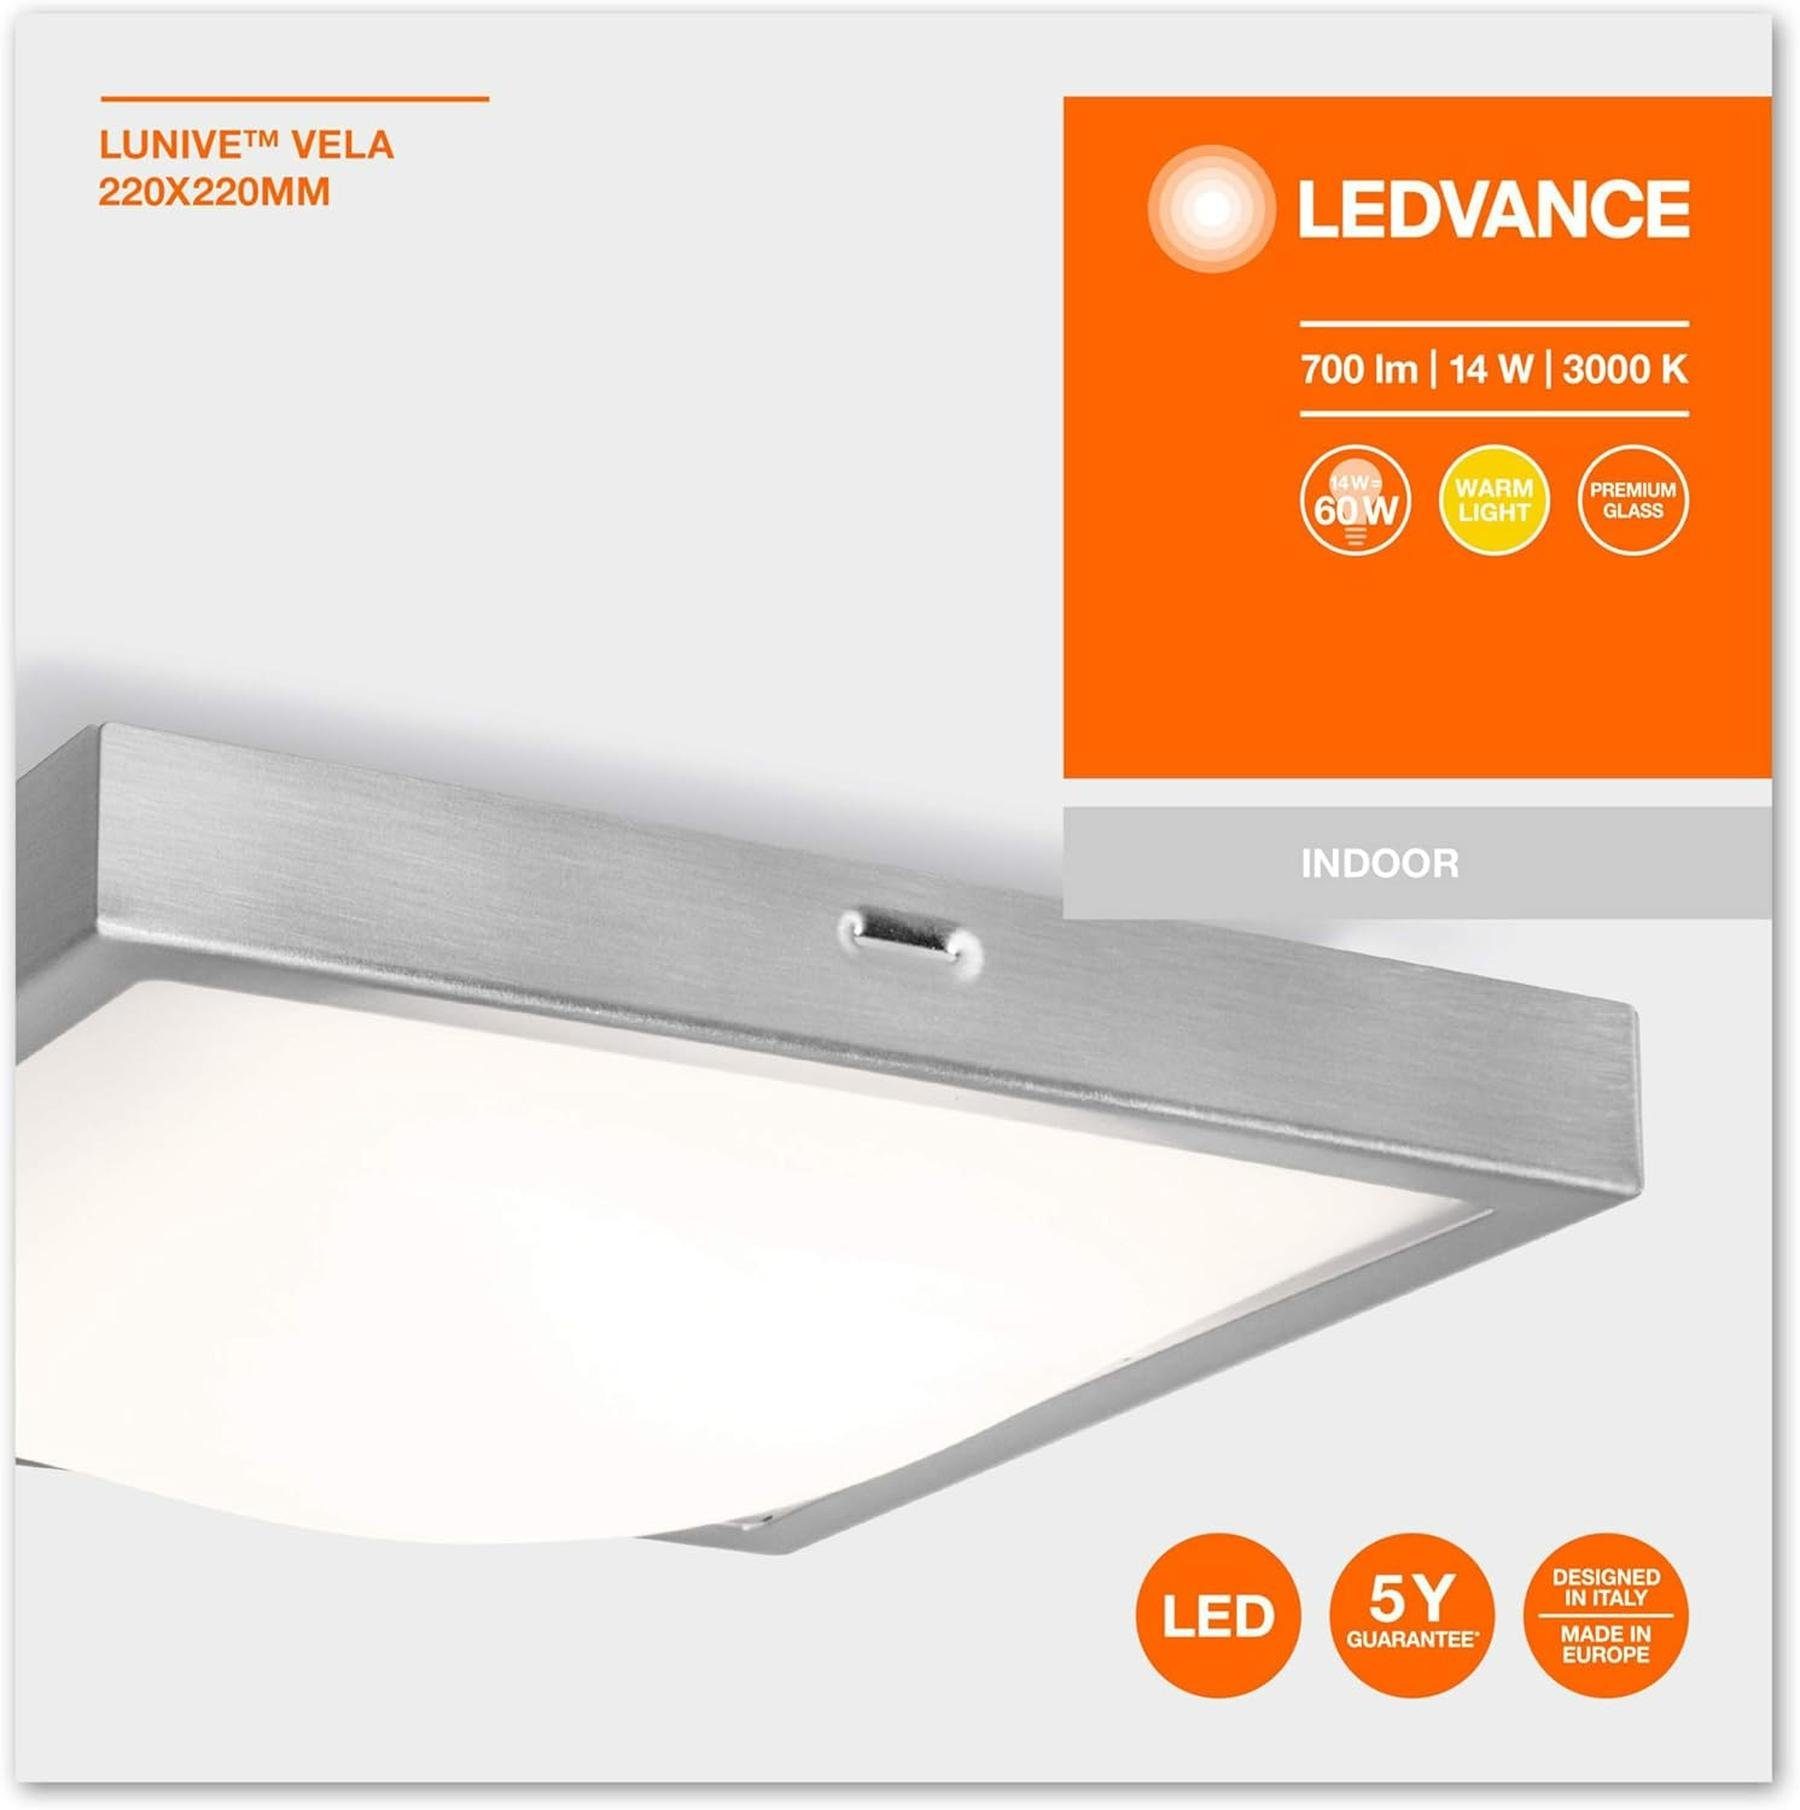 Ledvance LEDVANCE Wand- Deckenleuchte, und Warmweiß, Energieeffizient Wandleuchte LED